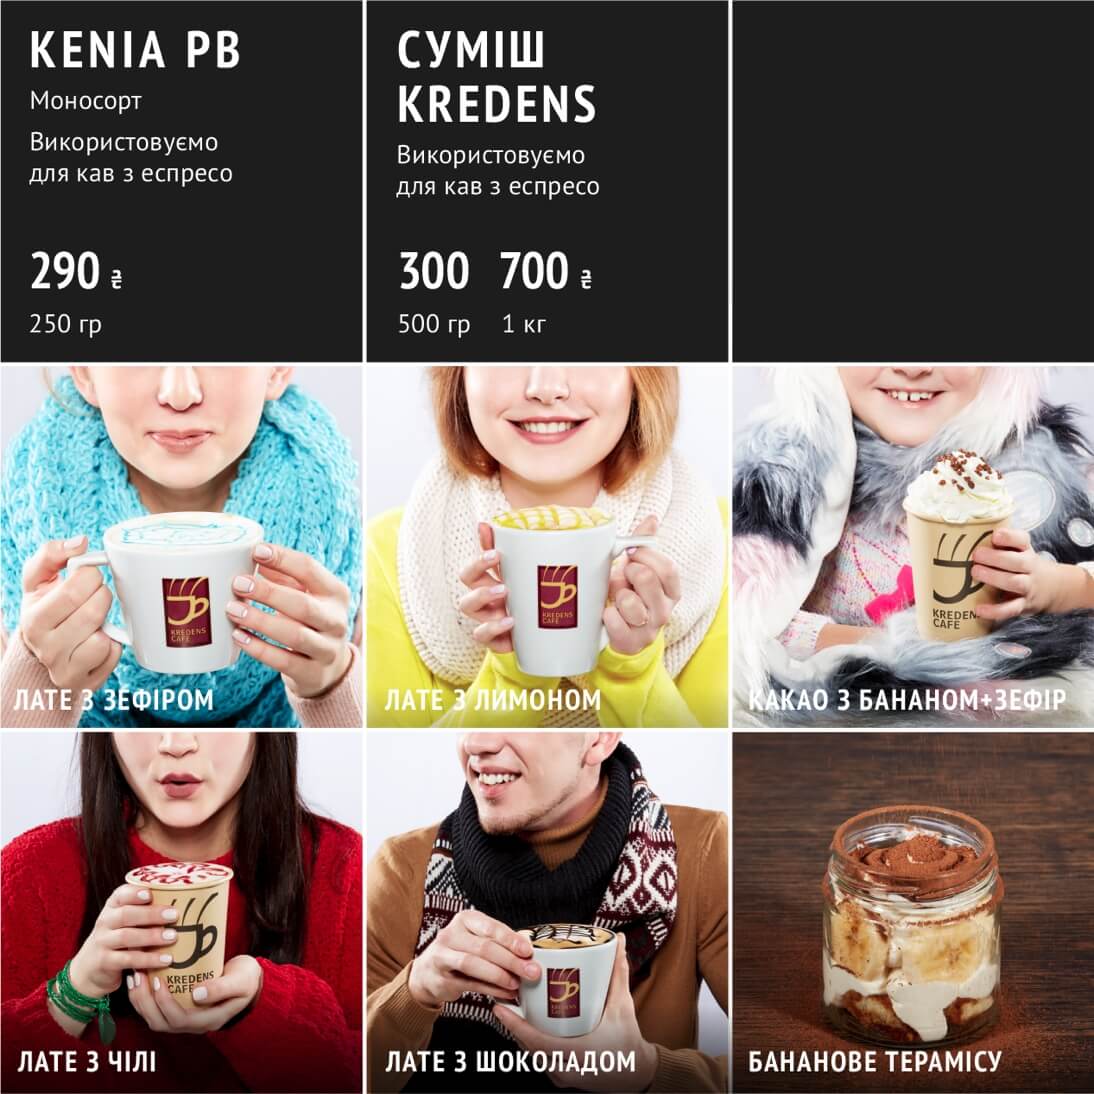 Kredens Cafe - kredens-menu2 - Qubstudio